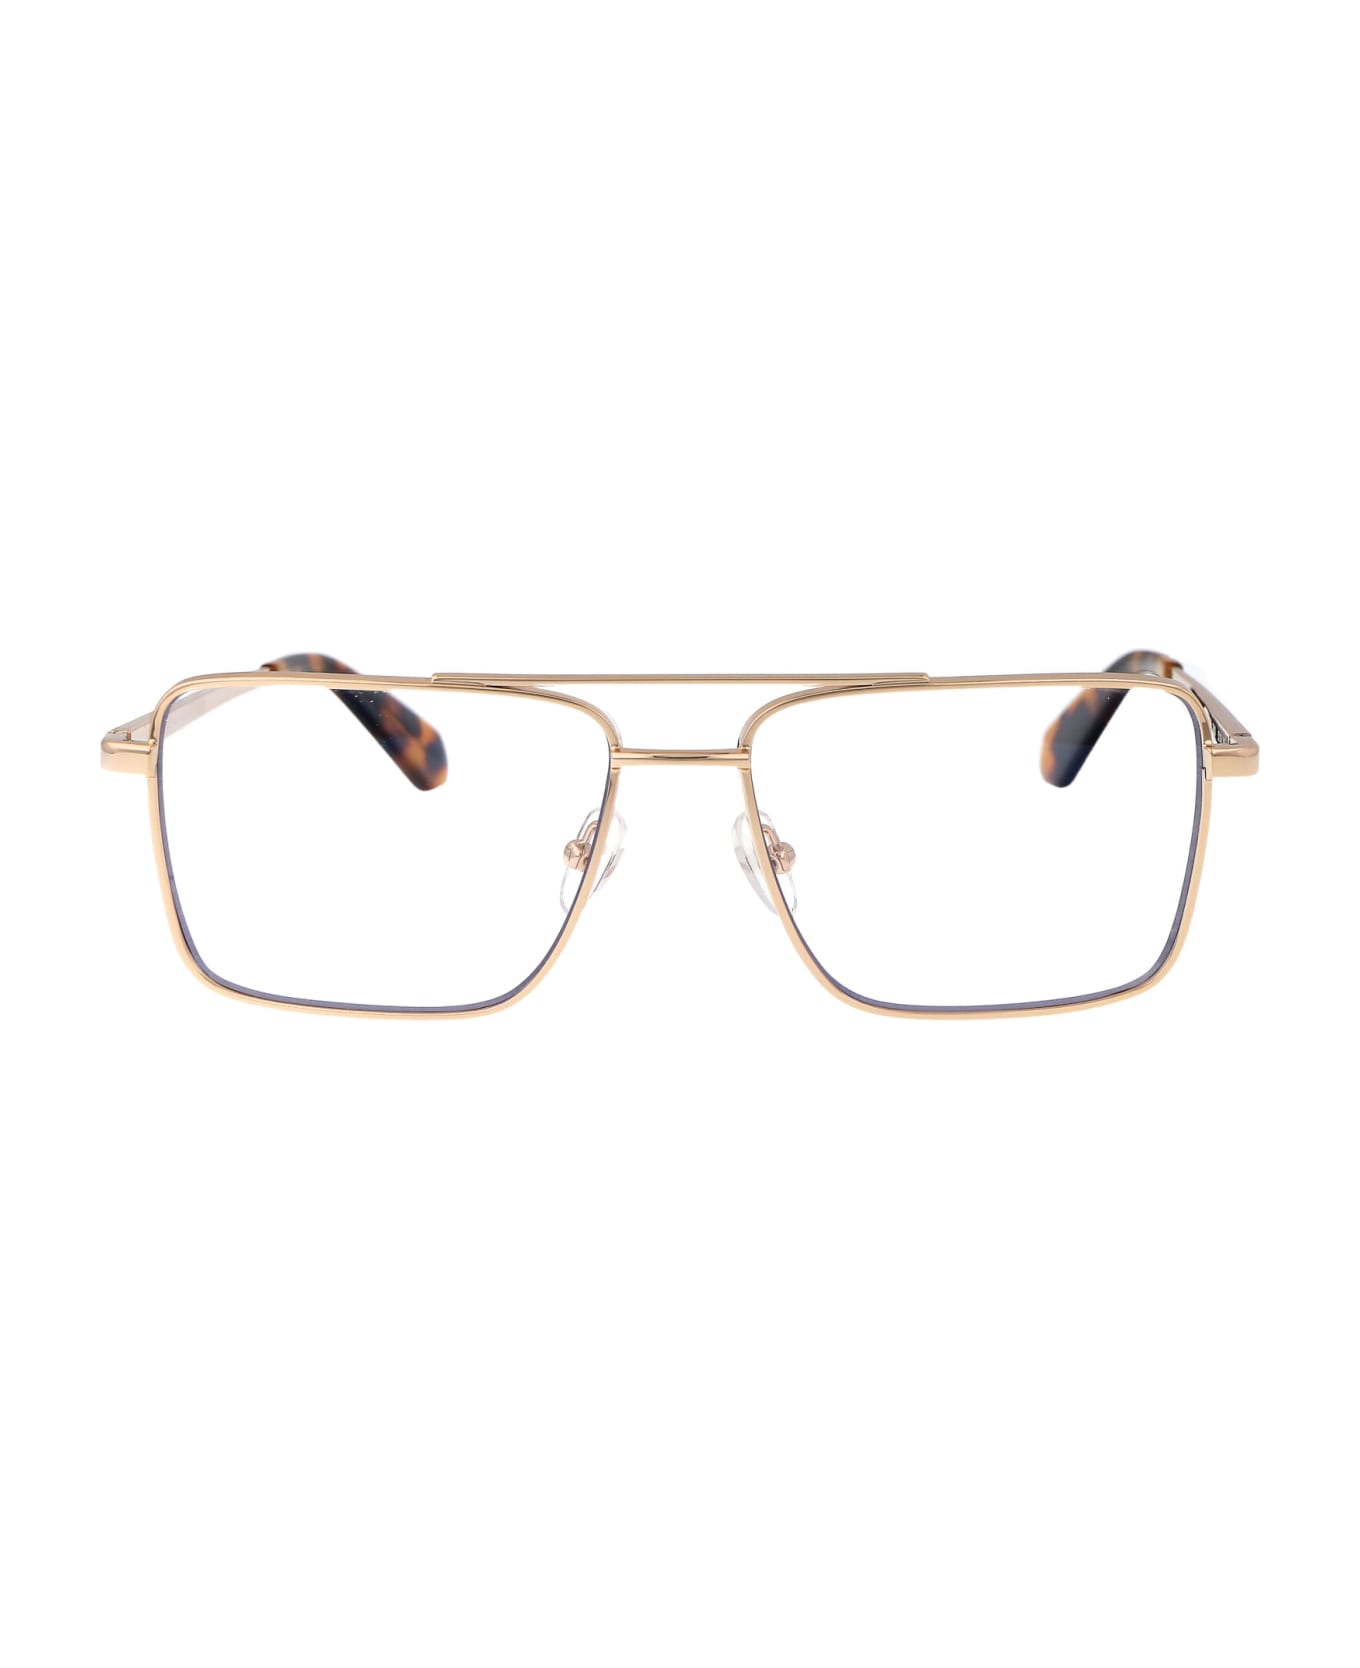 Off-White Optical Style 66 Glasses - 7600 GOLD アイウェア